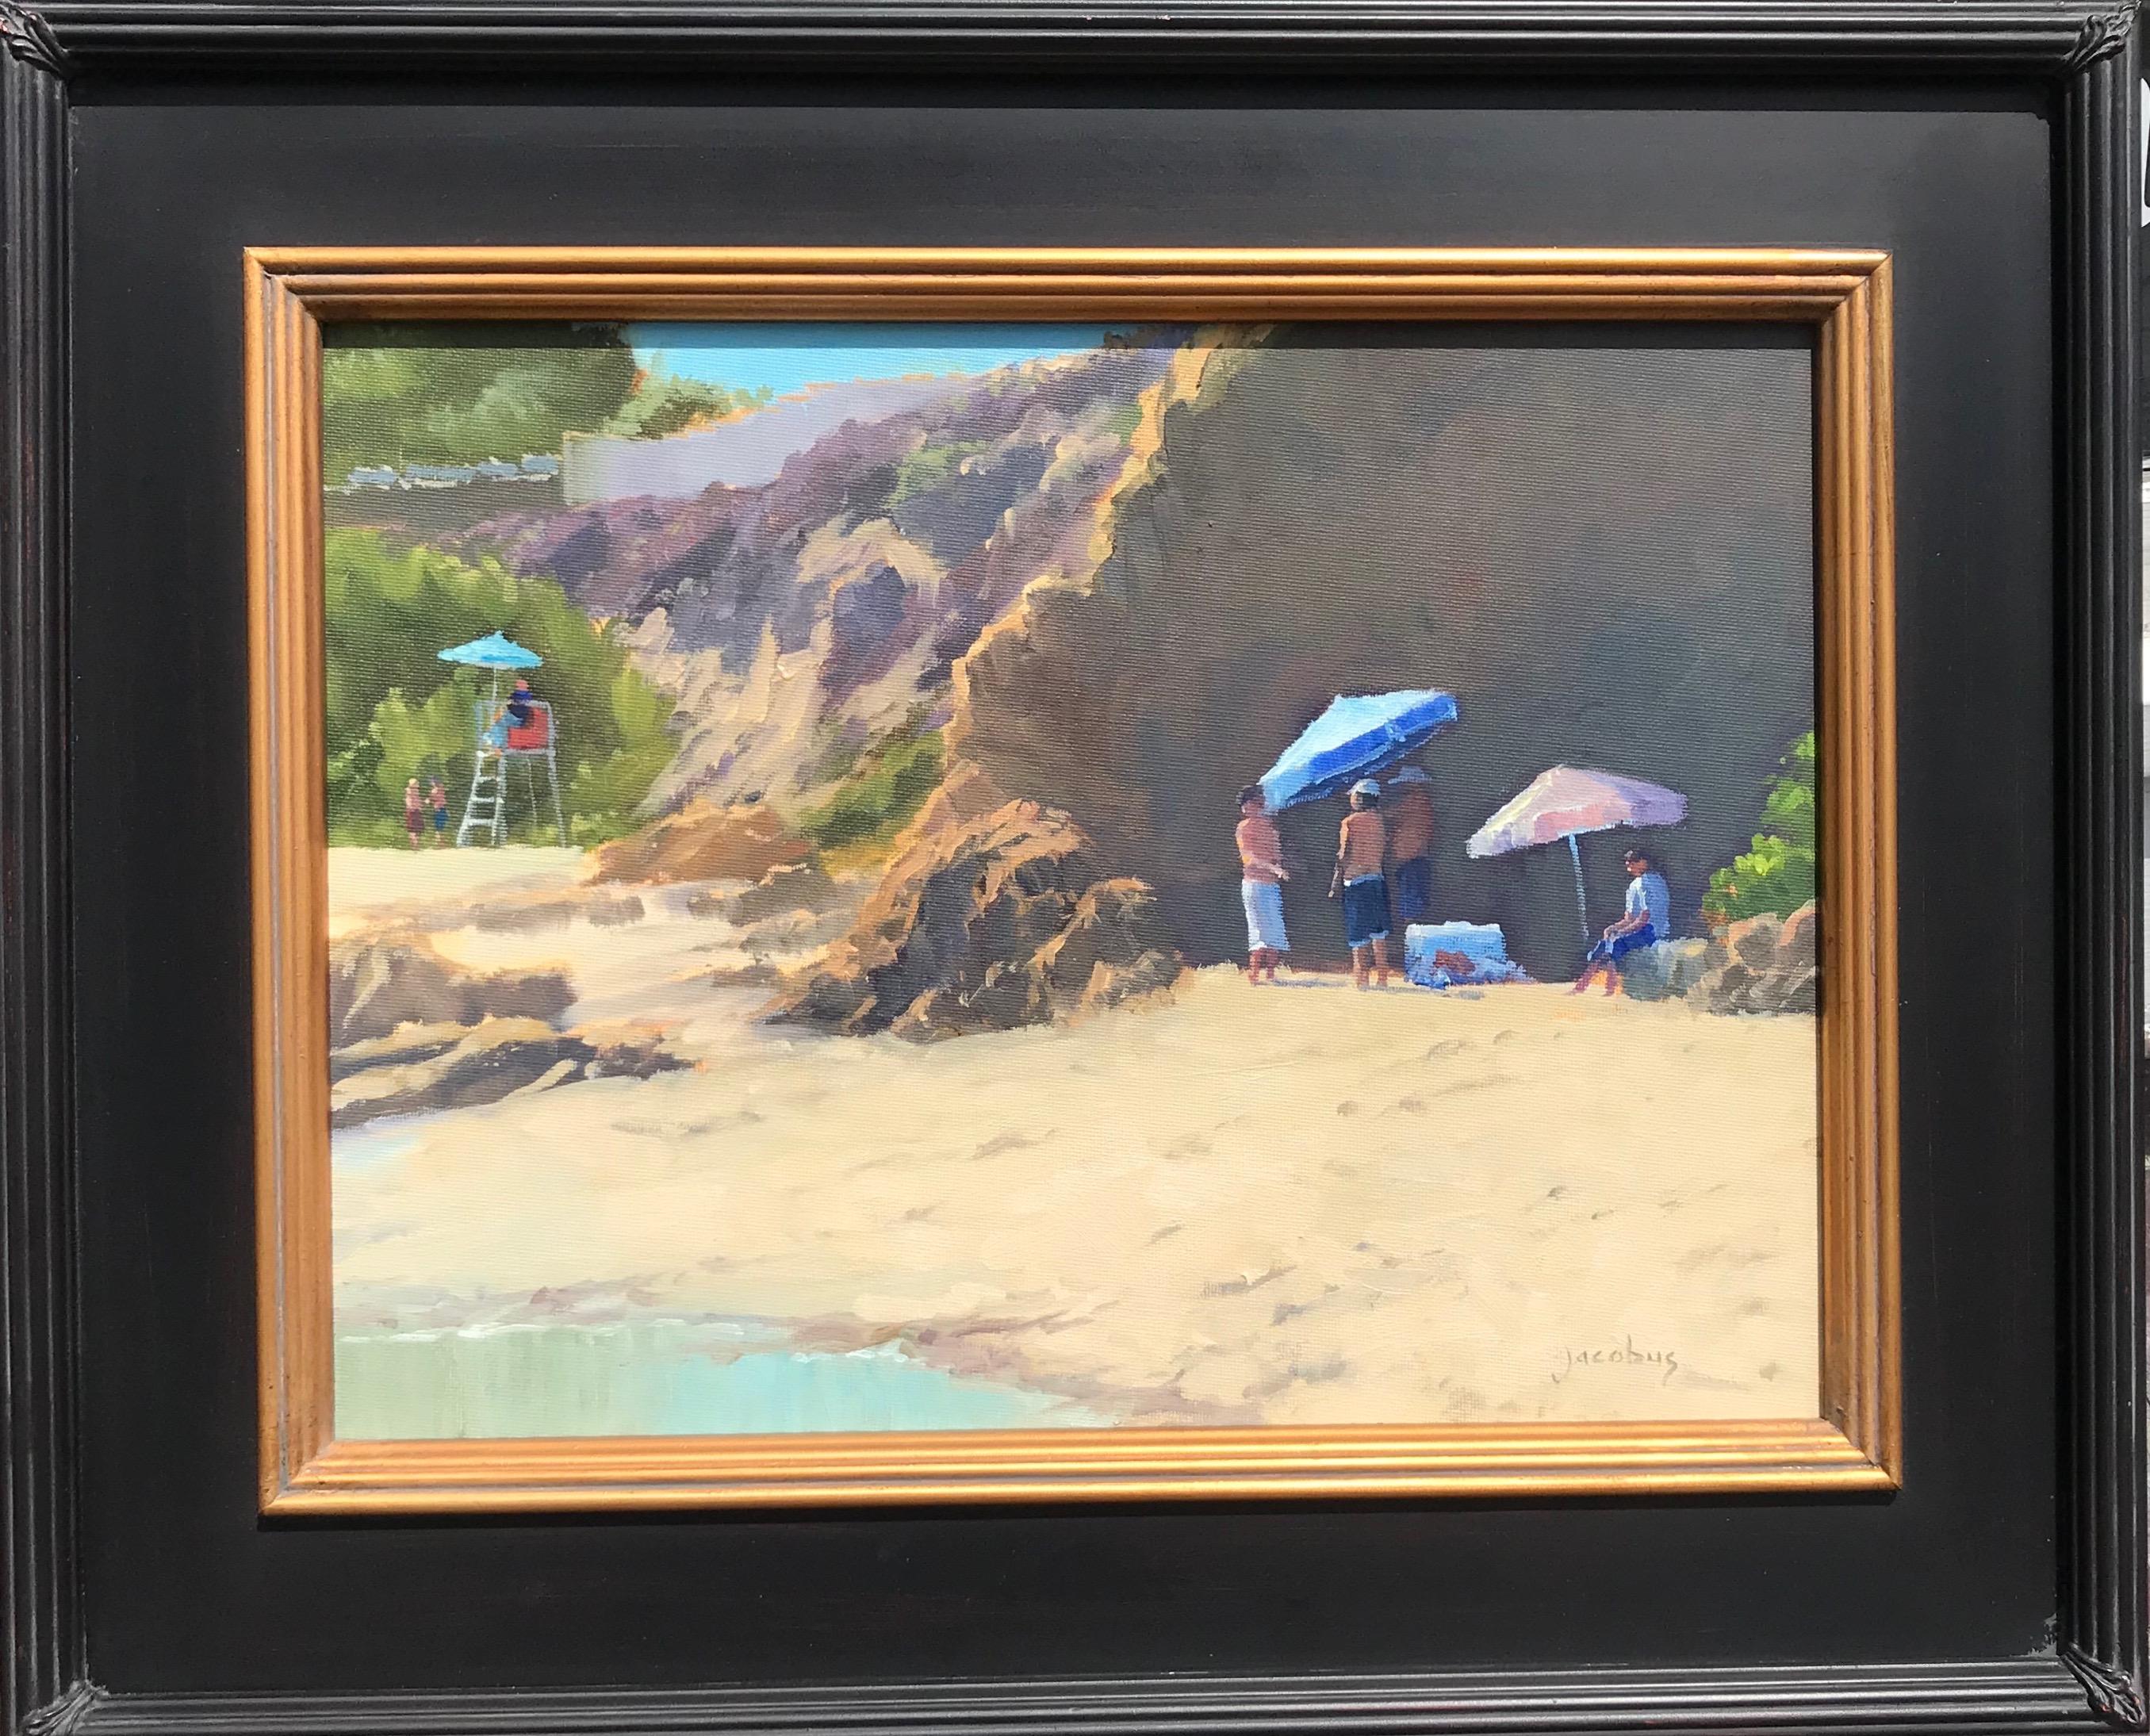 « 80' At Divers Cove » - Scène côtière de Californie du Sud - Impressionnisme Painting par Jacobus Baas